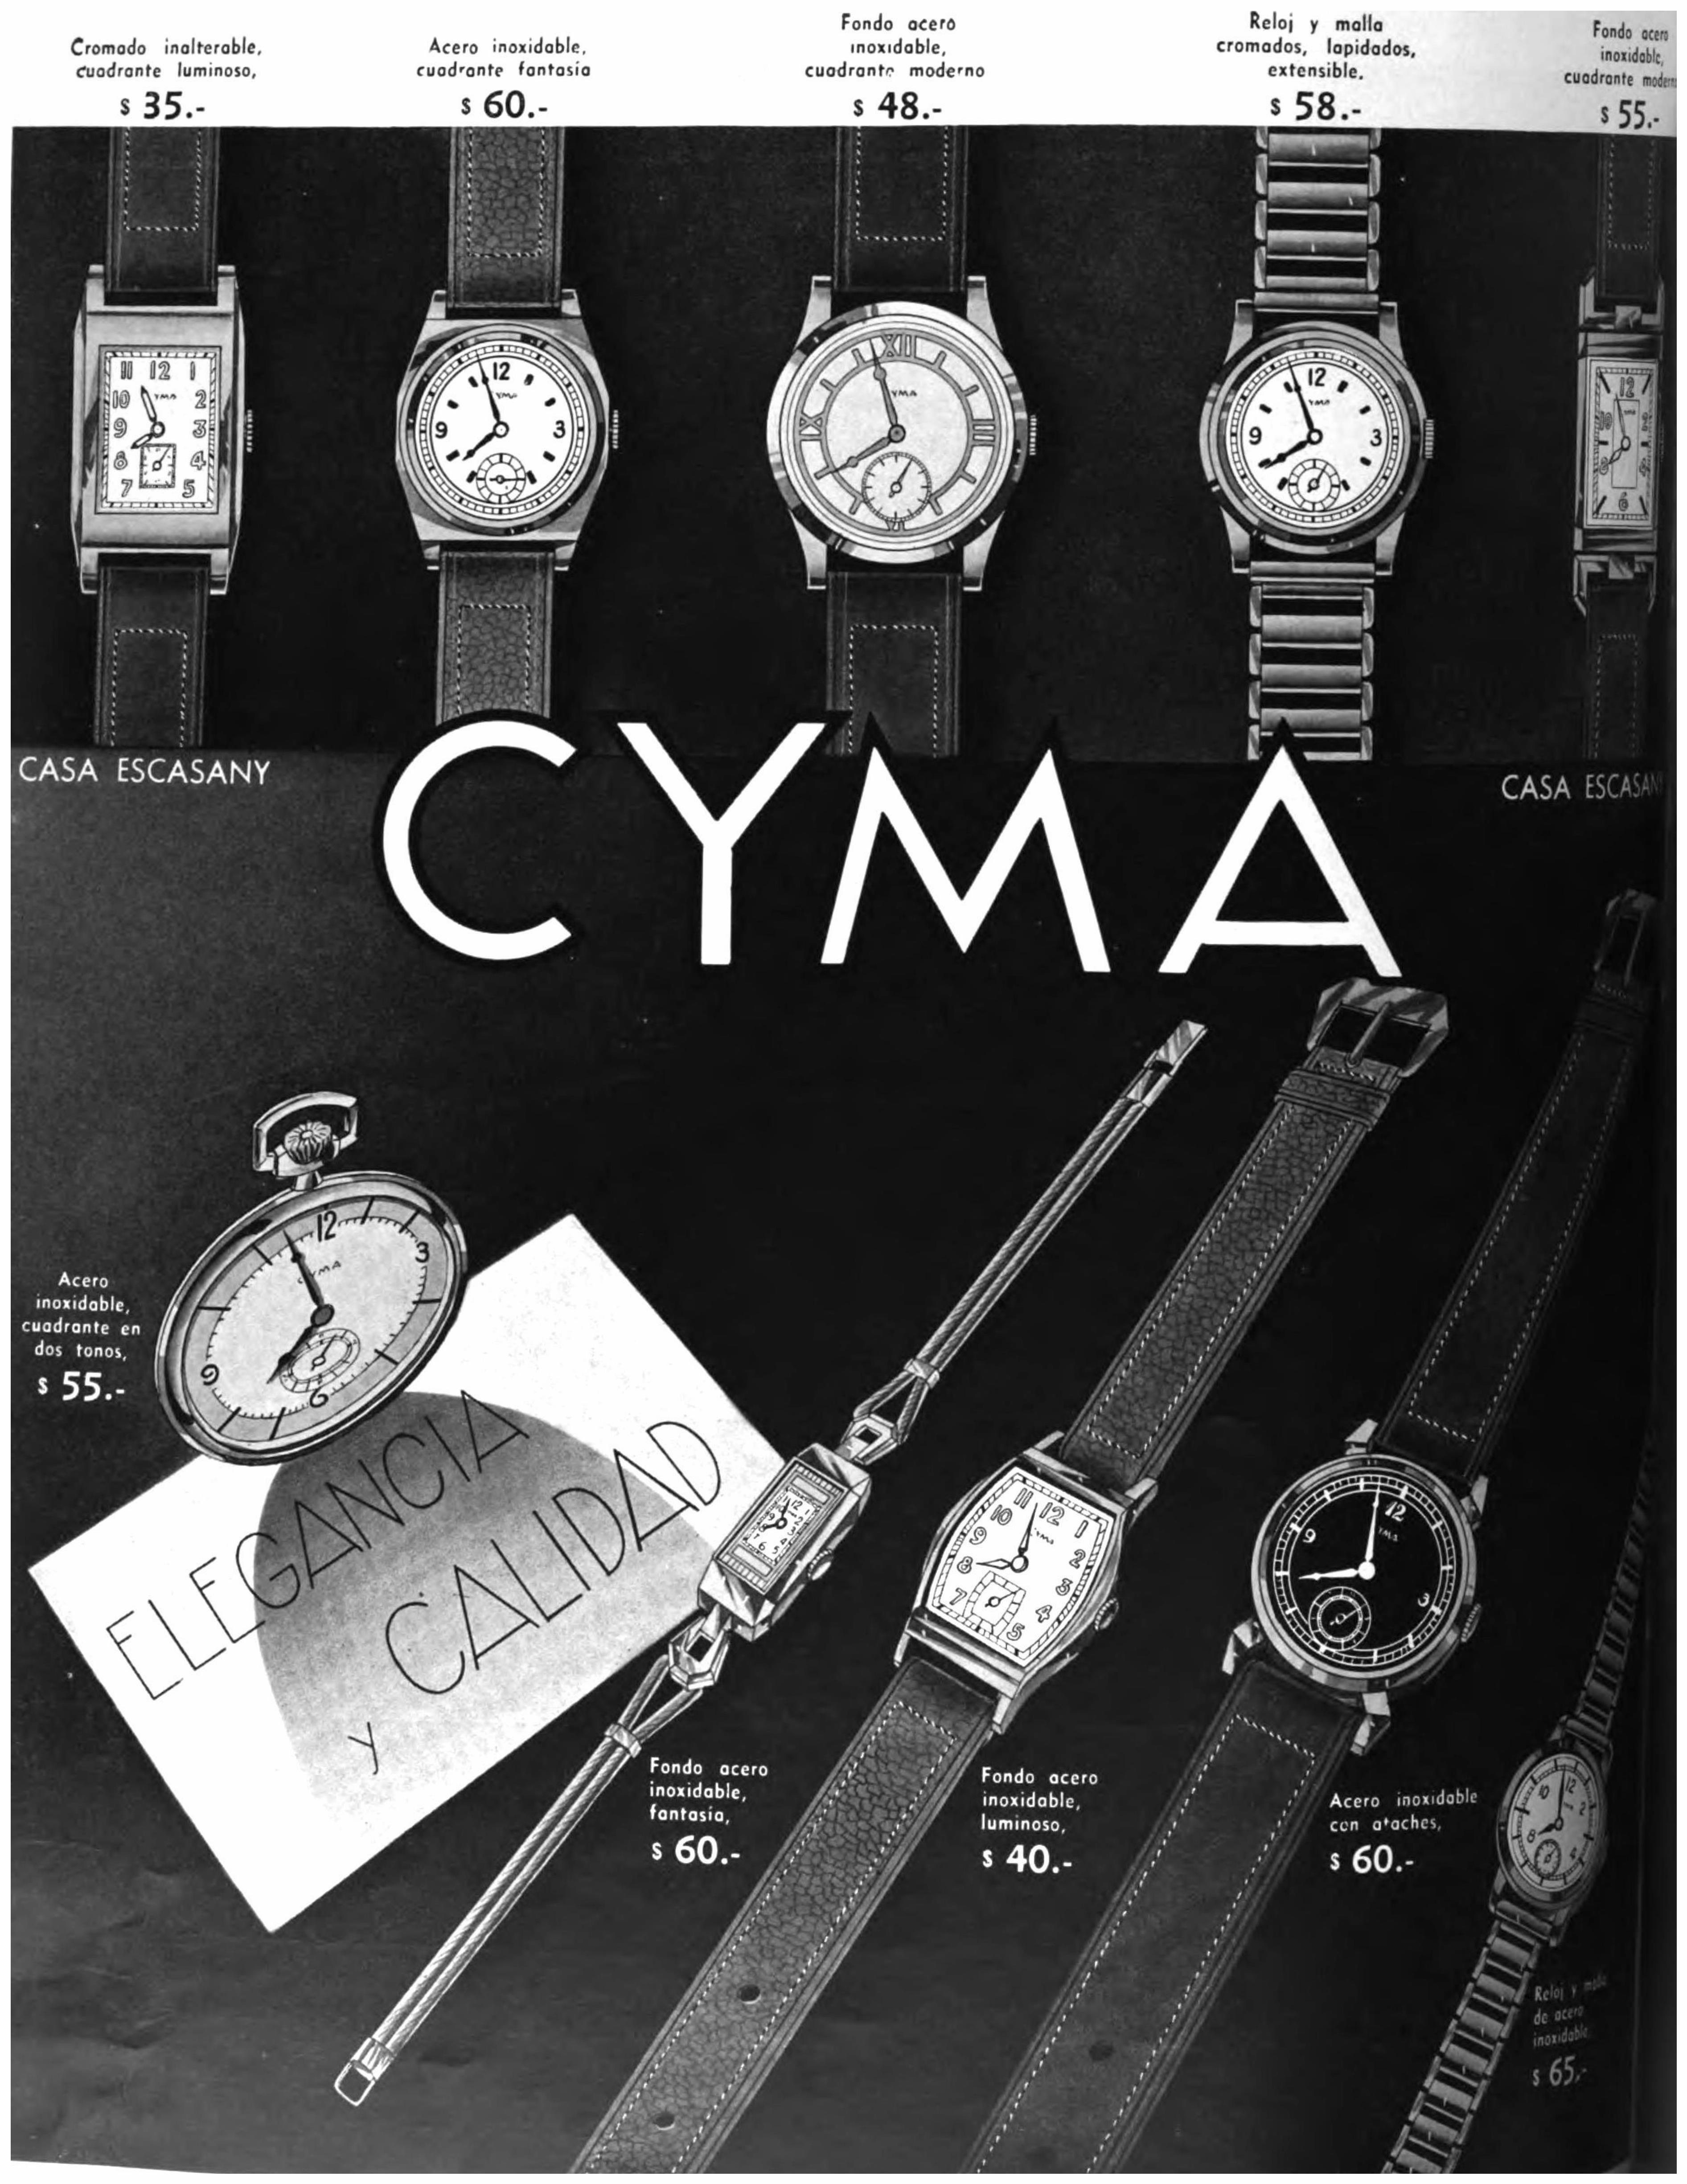 Cyma 1938 2.jpg